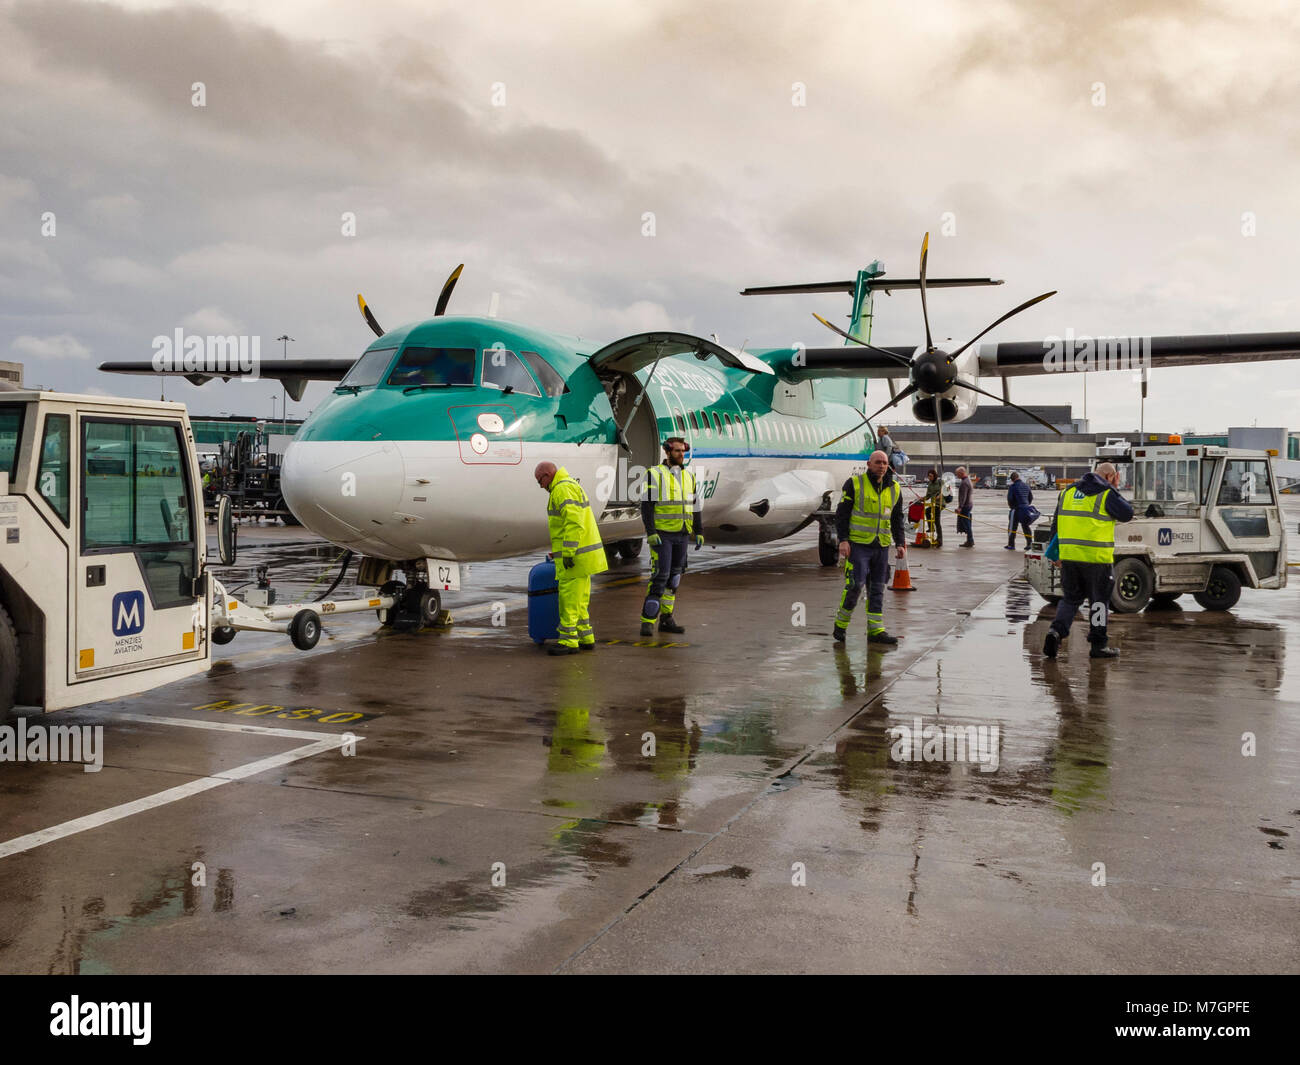 El piloto de Stobart Air compañía aérea irlandesa regional ATR 72-600 doble hélice que operaba Aer Lingus vuelos regionales están cargados con pasajeros y equipaje Foto de stock